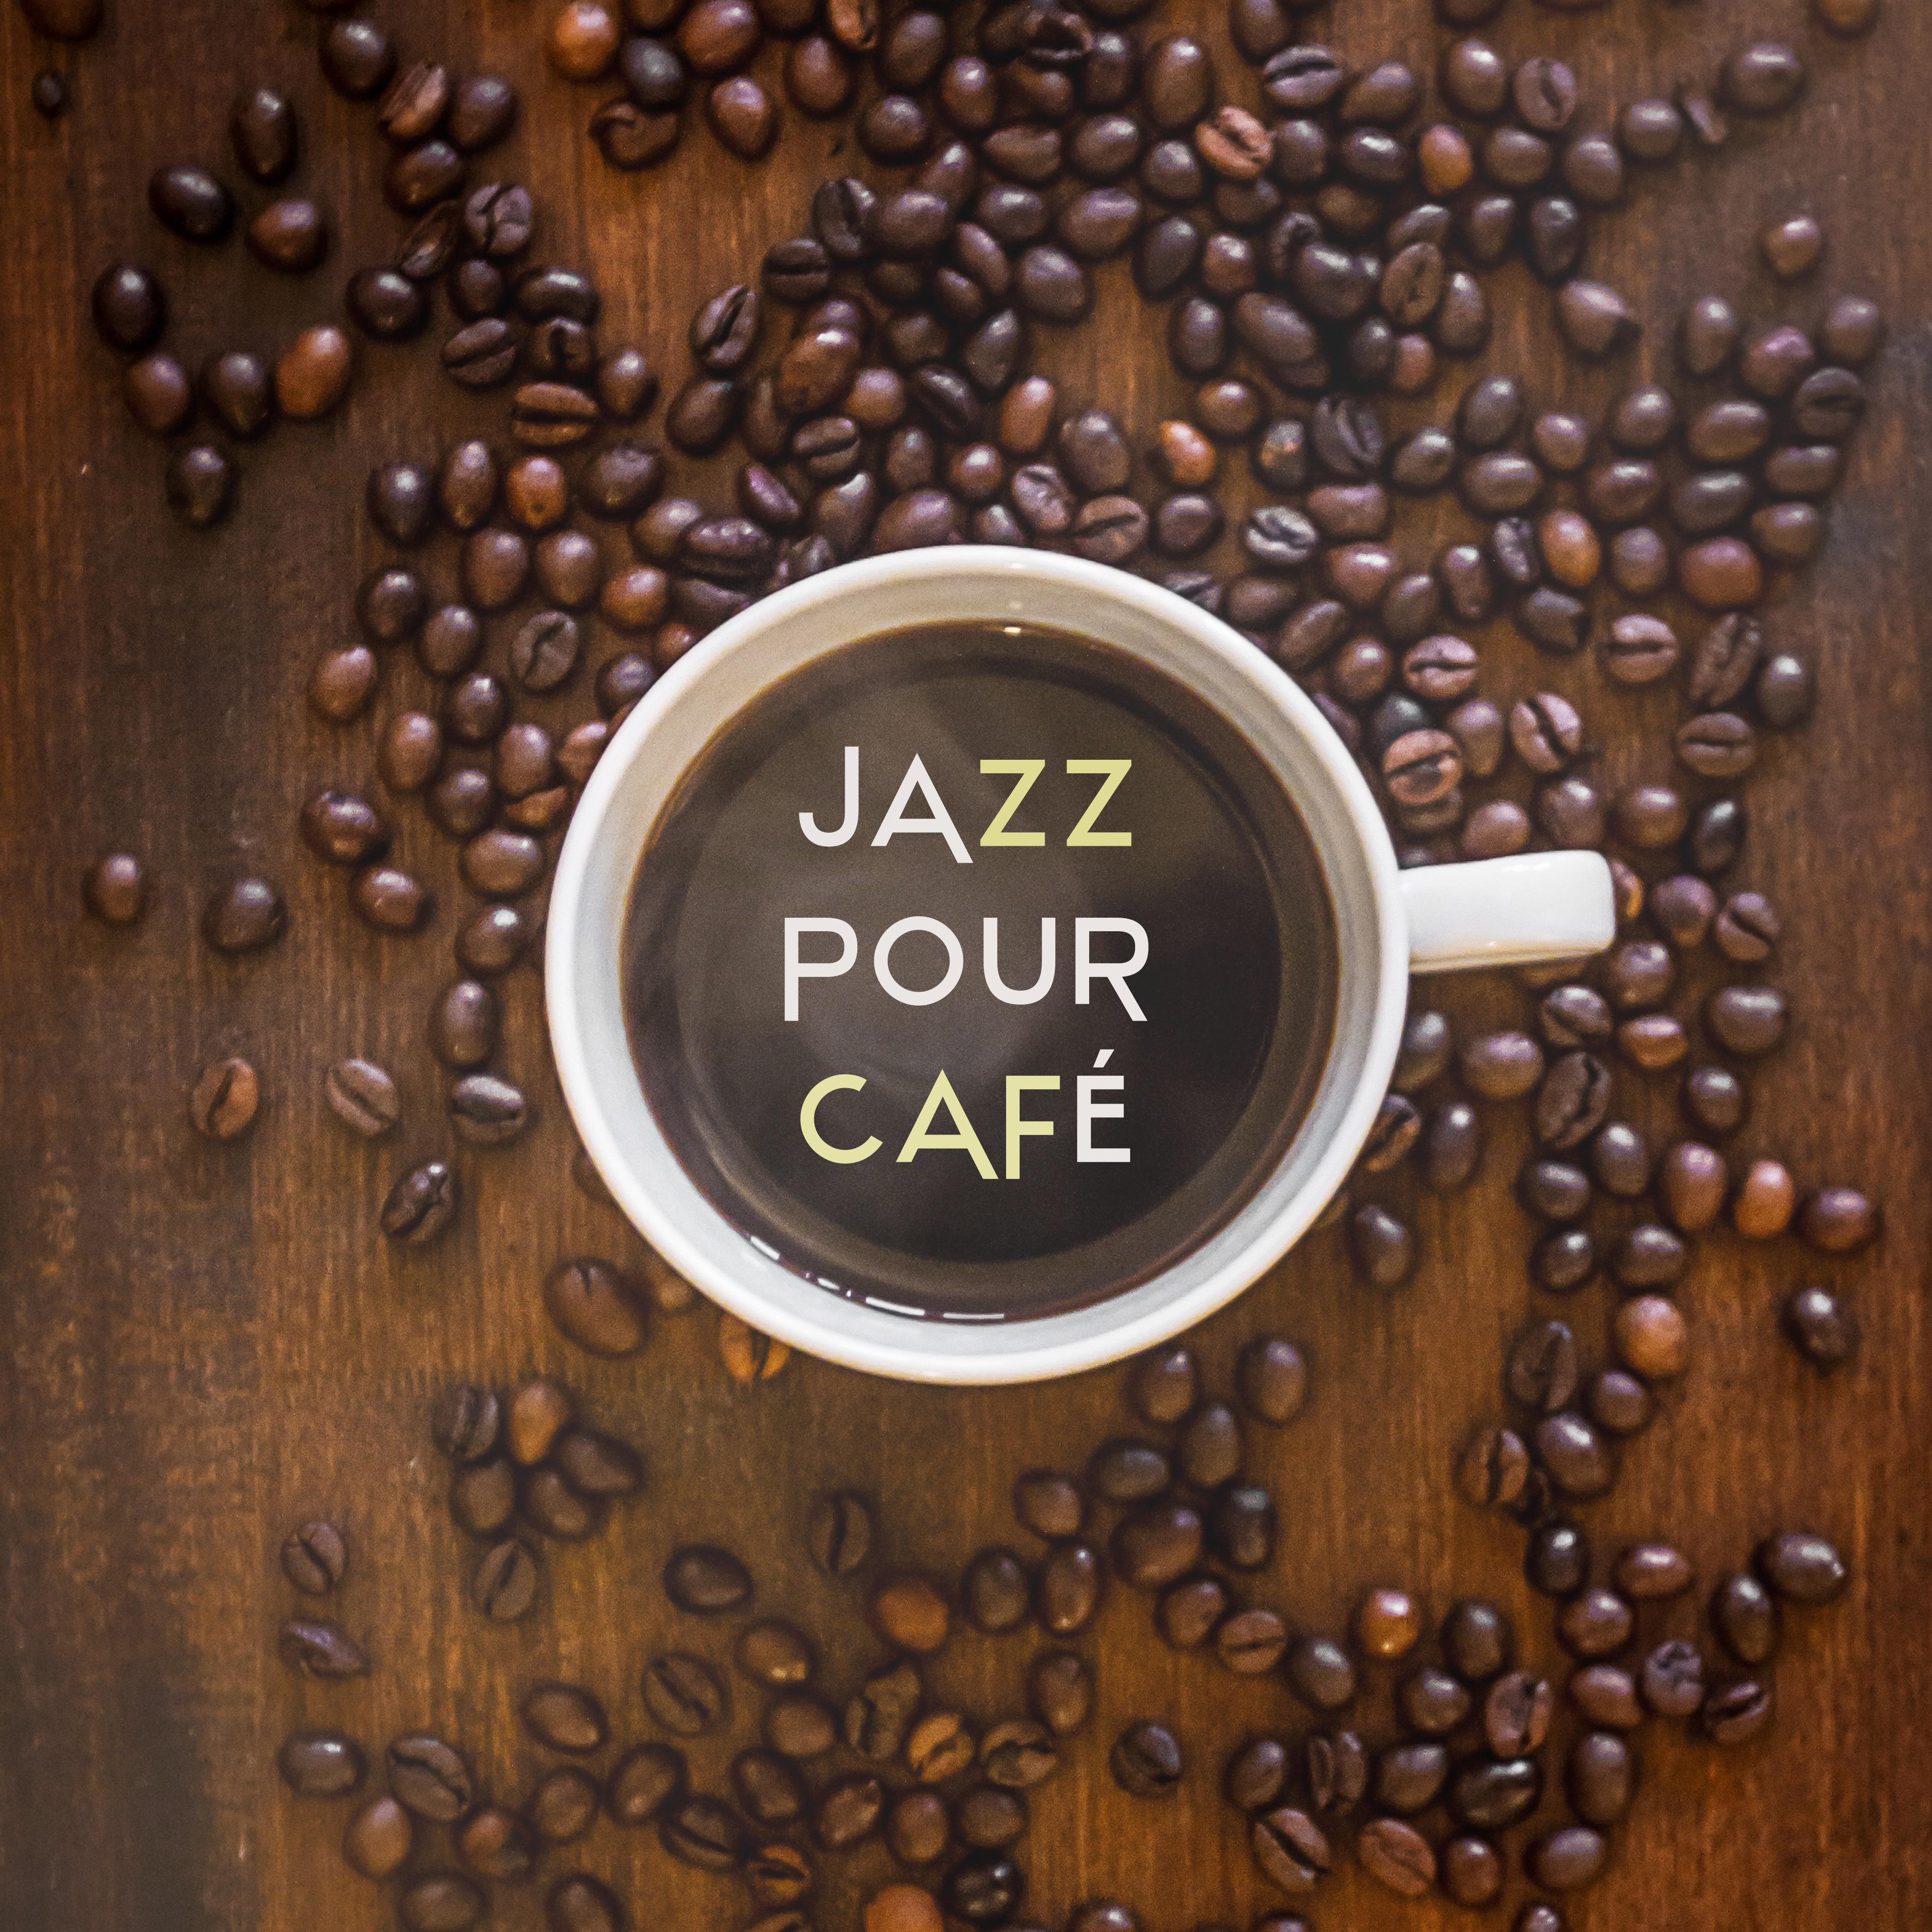 Jazz pour café - Musique de fond sensuelle et relaxante pour Bar, Dîner avec la famille, Temps détente, Musique instrumentale